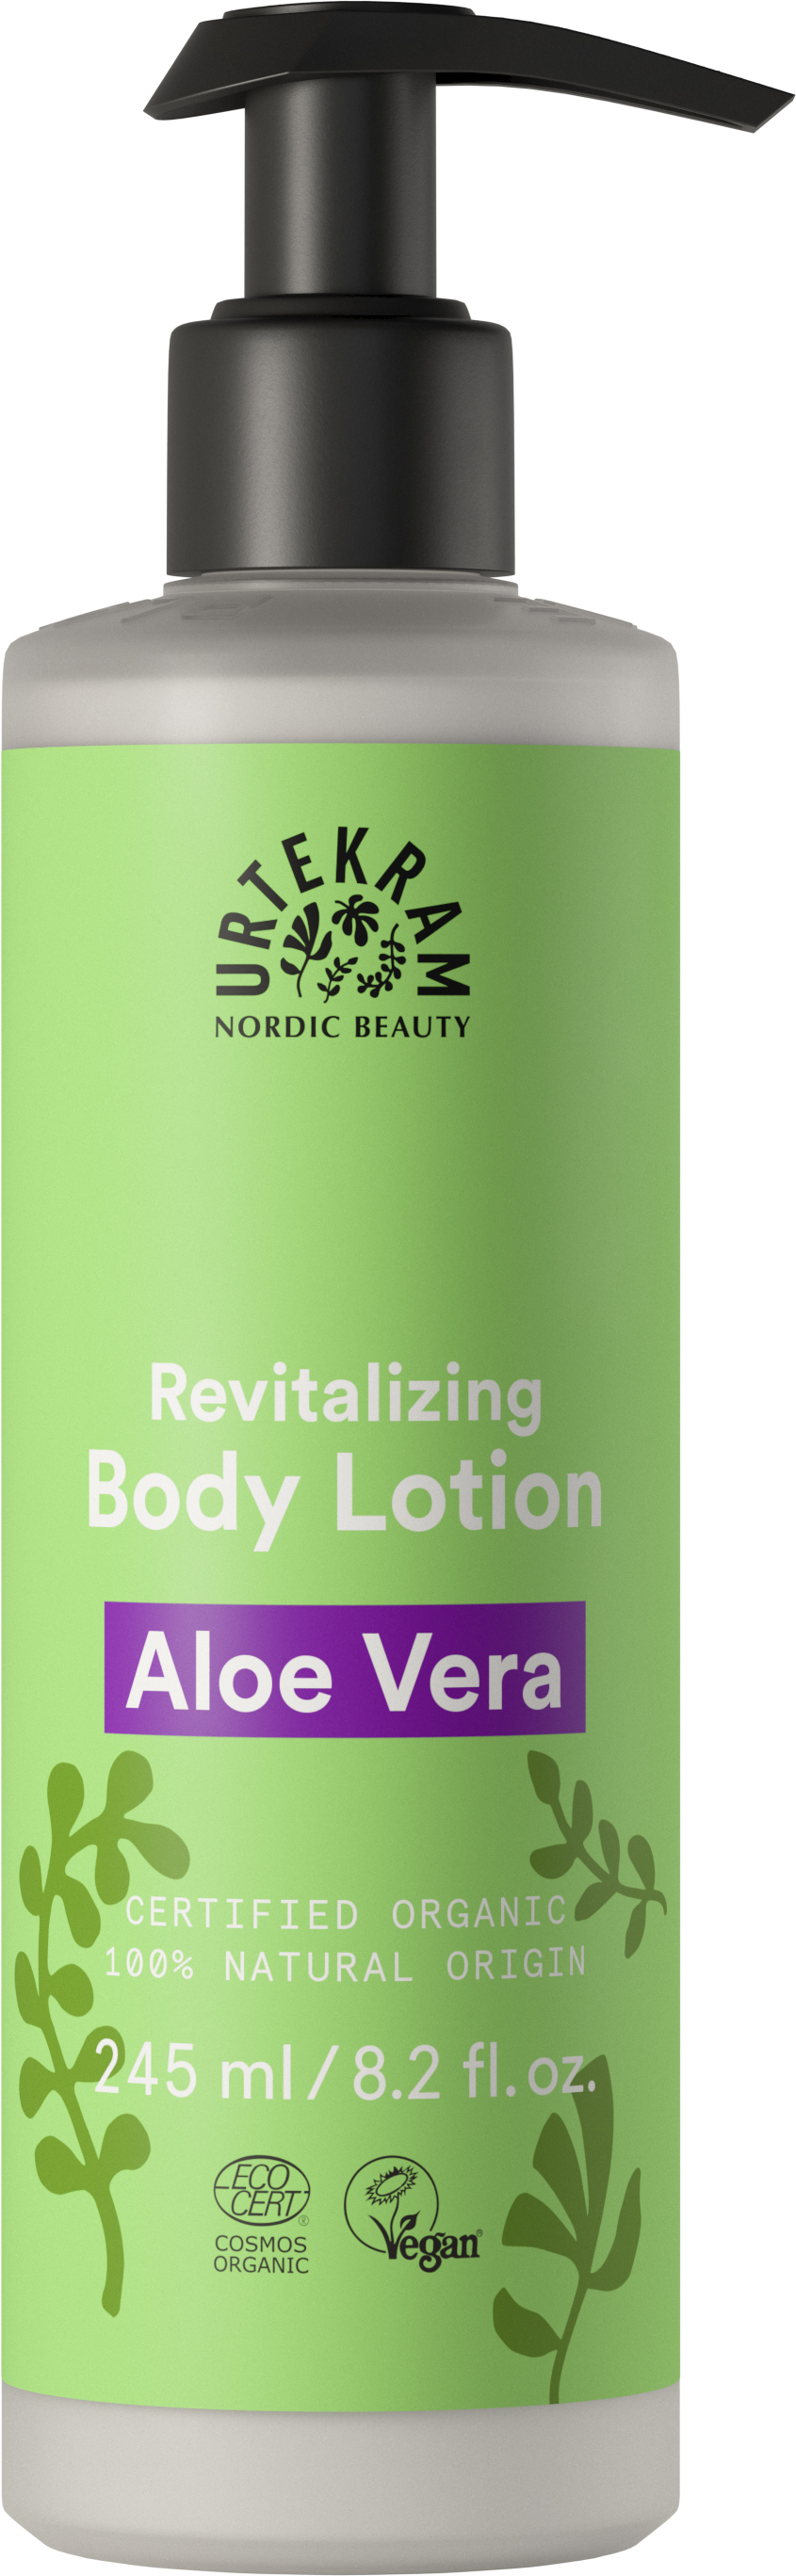 Aloe Vera Body Lotion 